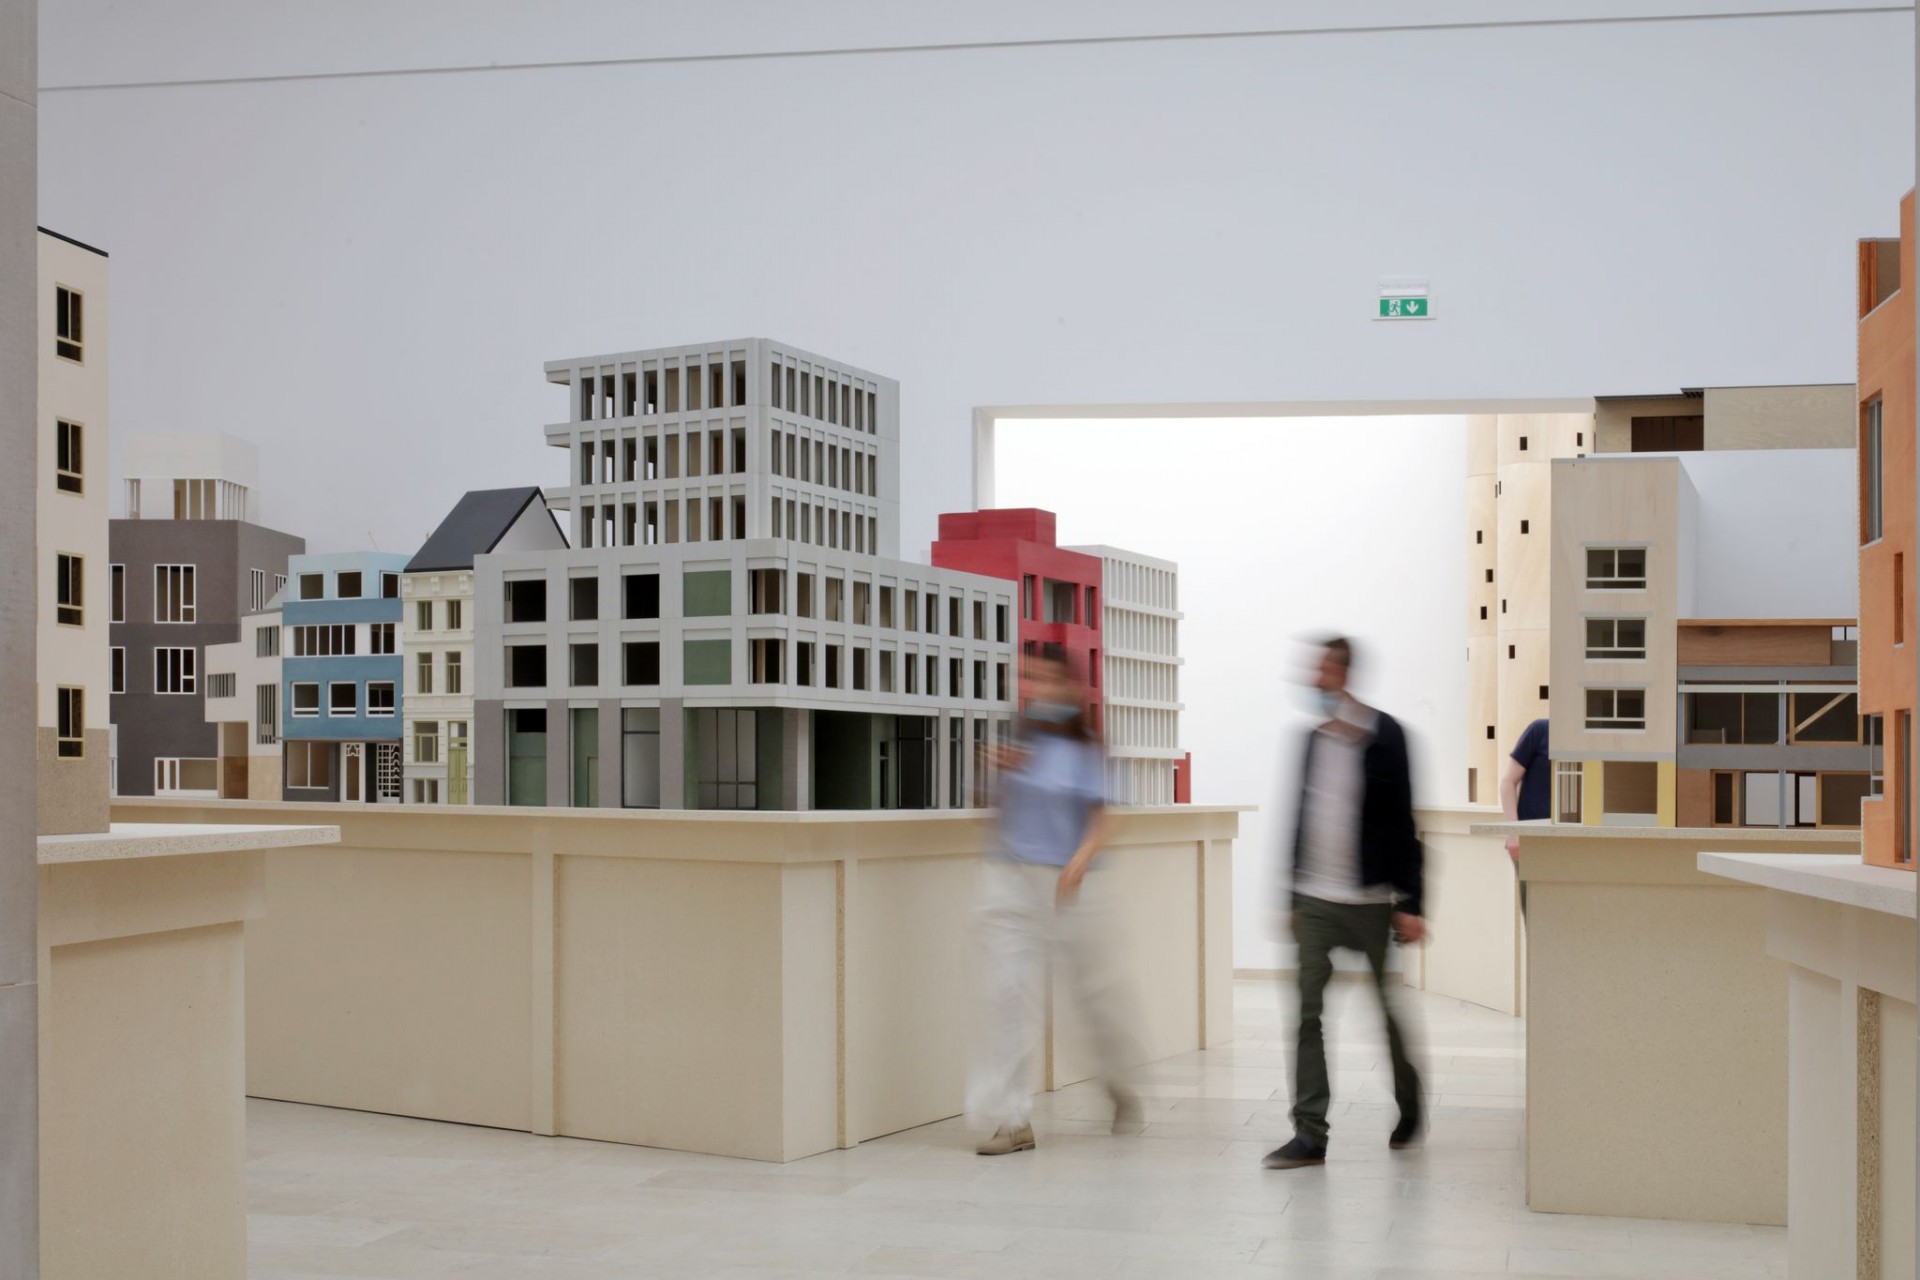 Maquettes van bouwprojecten in het Belgisch paviljoen op de Biennale Architettura 2021.